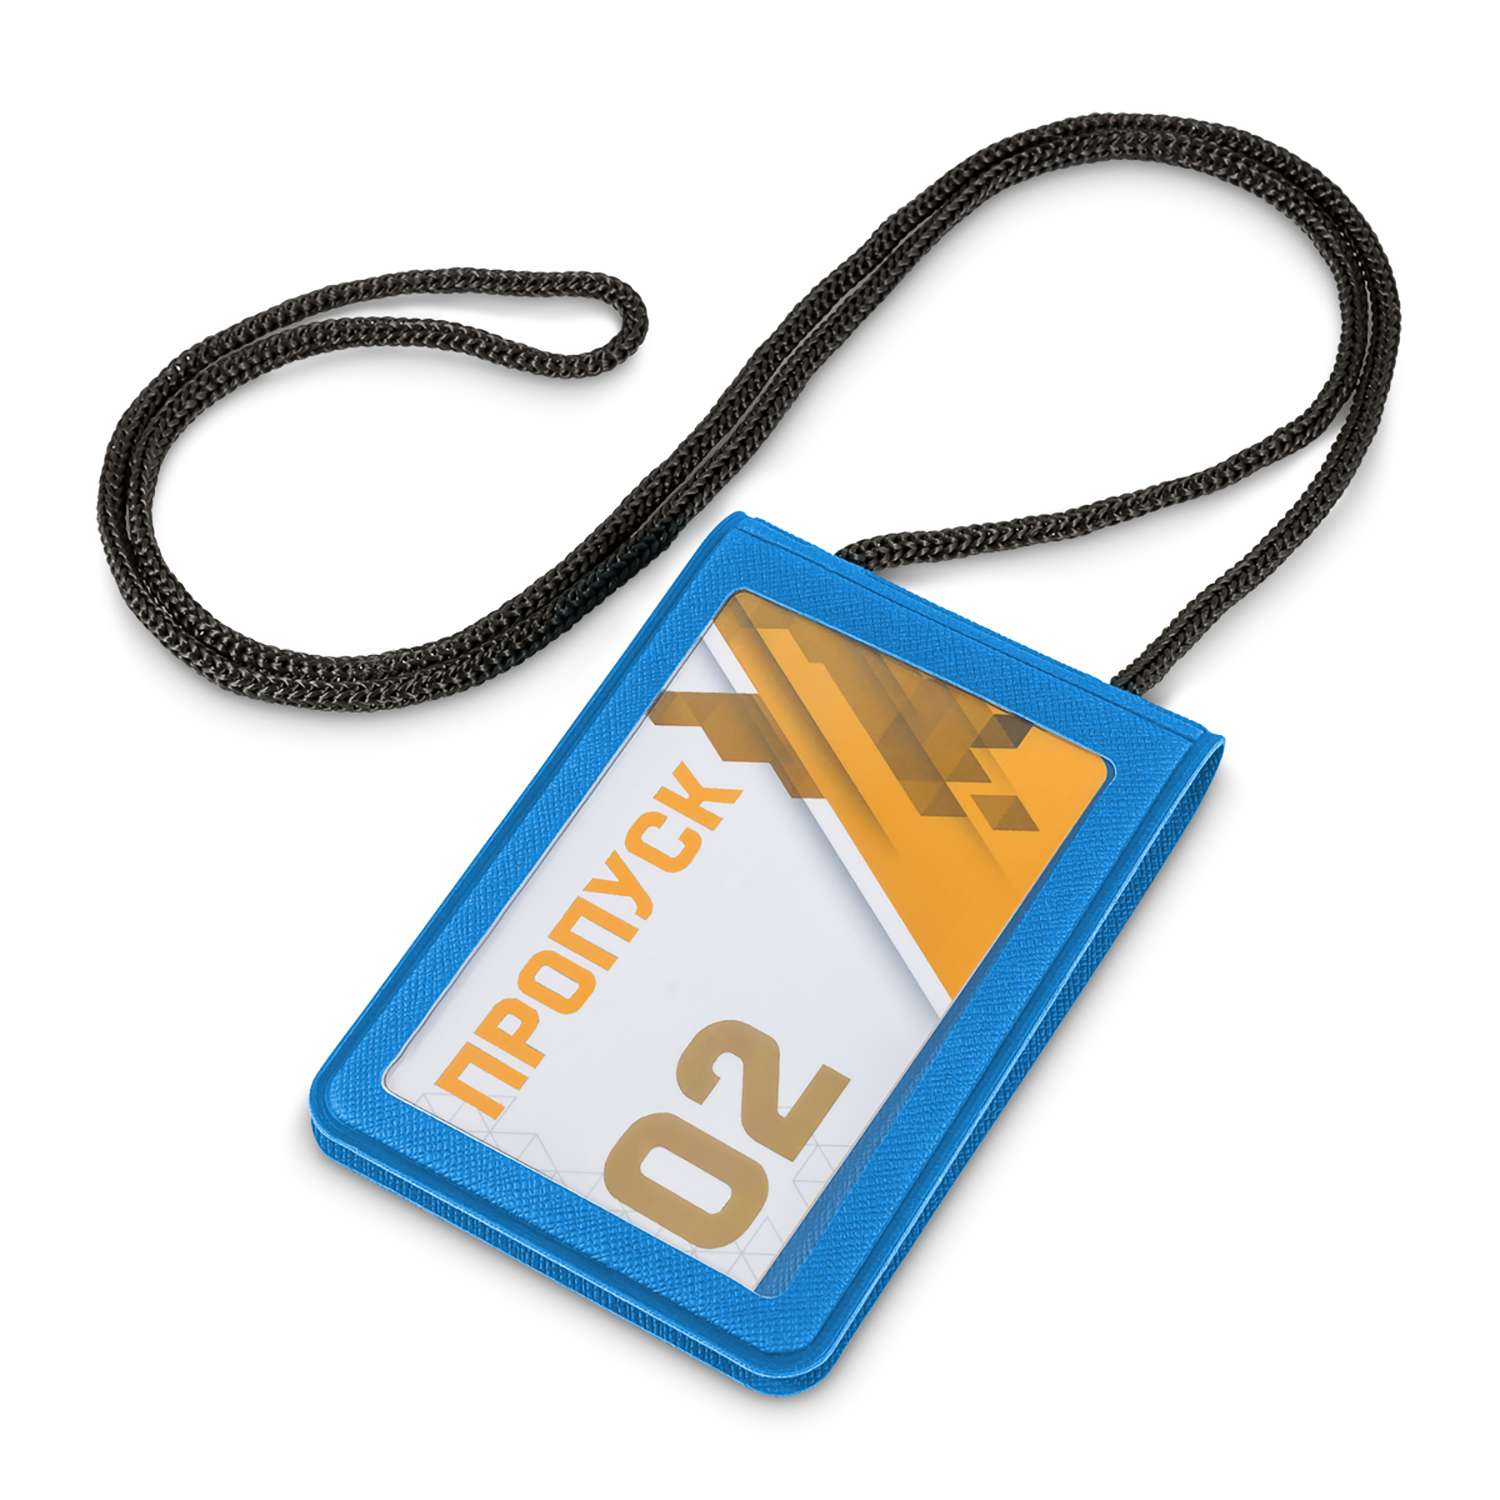 Держатель для бейджа Flexpocket с двойным карманом для карты или пропуска - фото 1